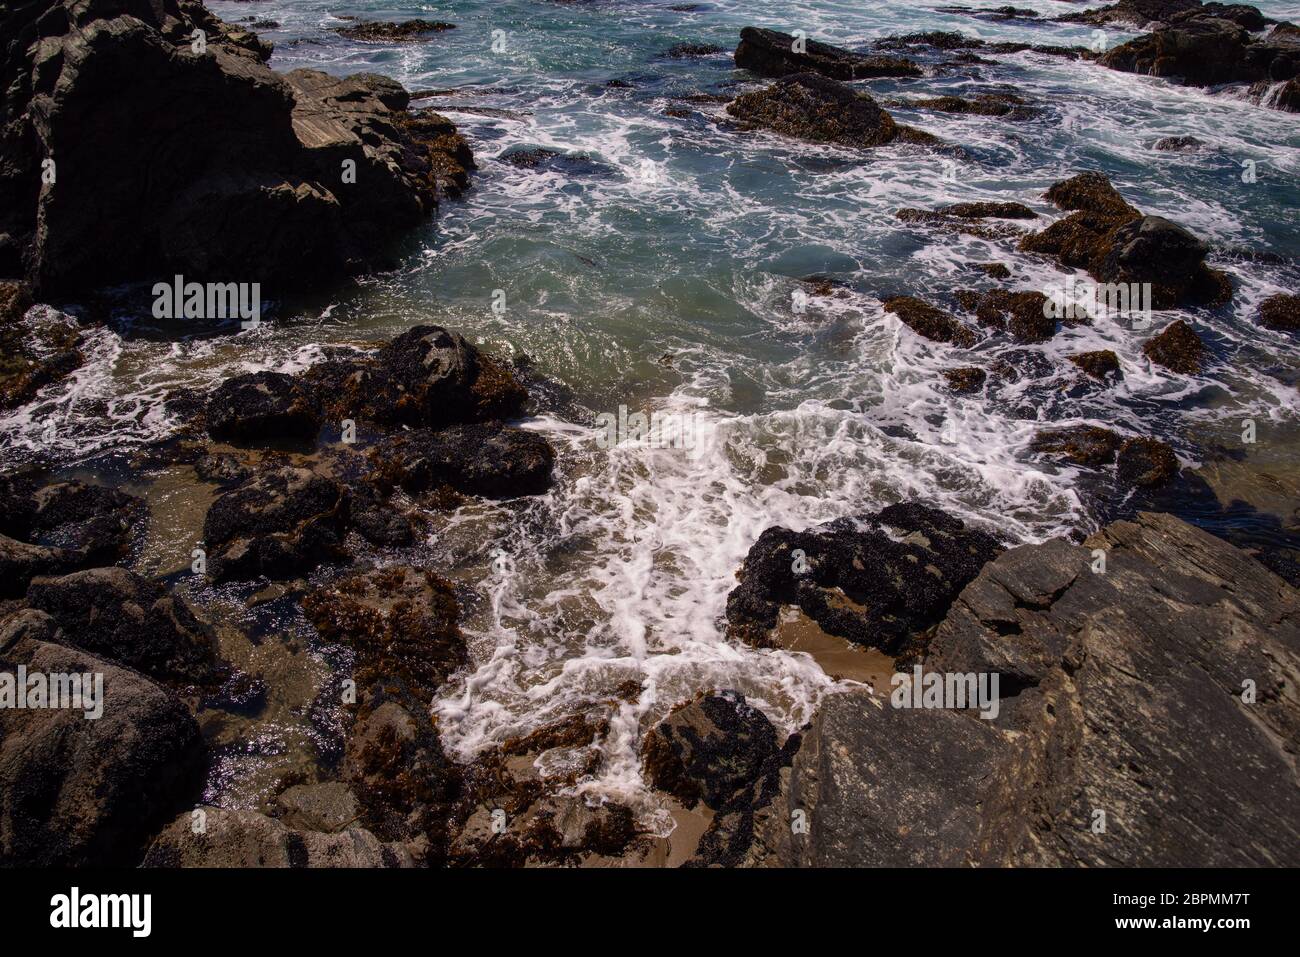 Strandromantik pur am Pazifik am Strand von TrilTril in der Los Lagos Region ca. 60km westlich von Osorno gelegen. Ein echter Geheimtipp für alle Natu Stock Photo